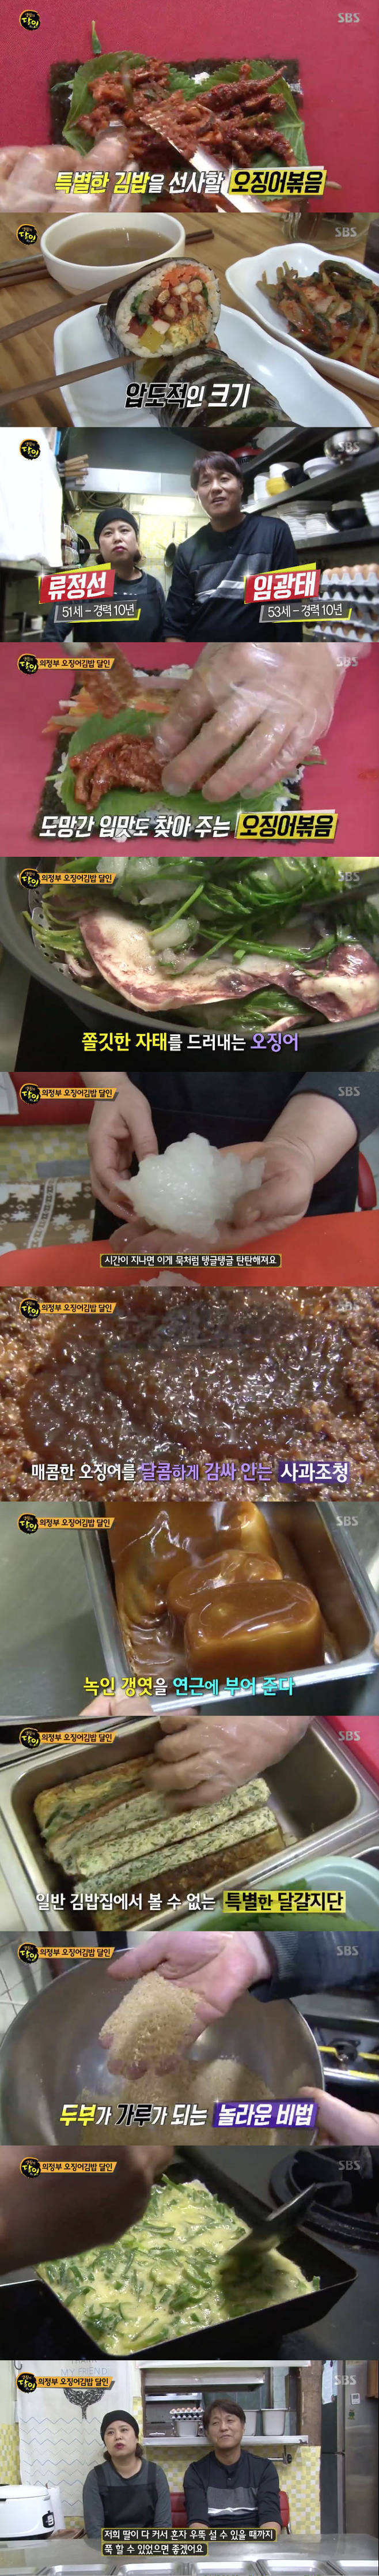 '생활의 달인` 의정부 오징어 김밥 중독성 비법은? 